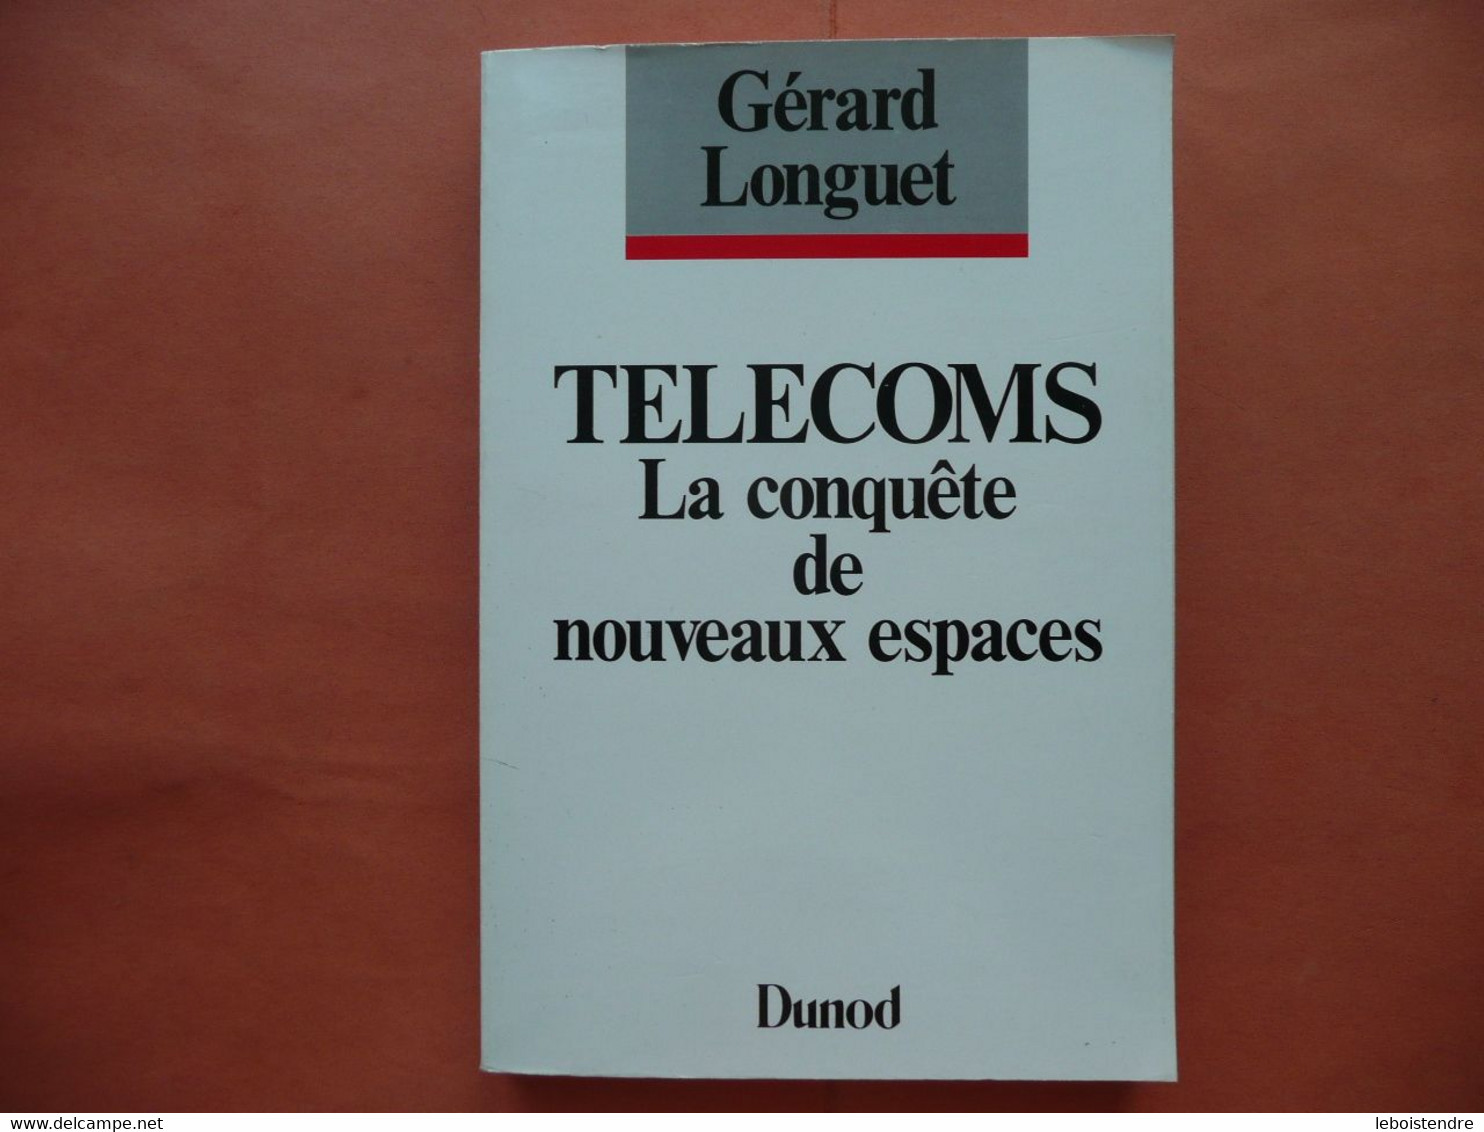 TELECOMS LA CONQUETE DE NOUVEAUX ESPACES GERARD LONGUET DUNOD 1988 DESSINS LIONEL KOECHLIN - Audio-video